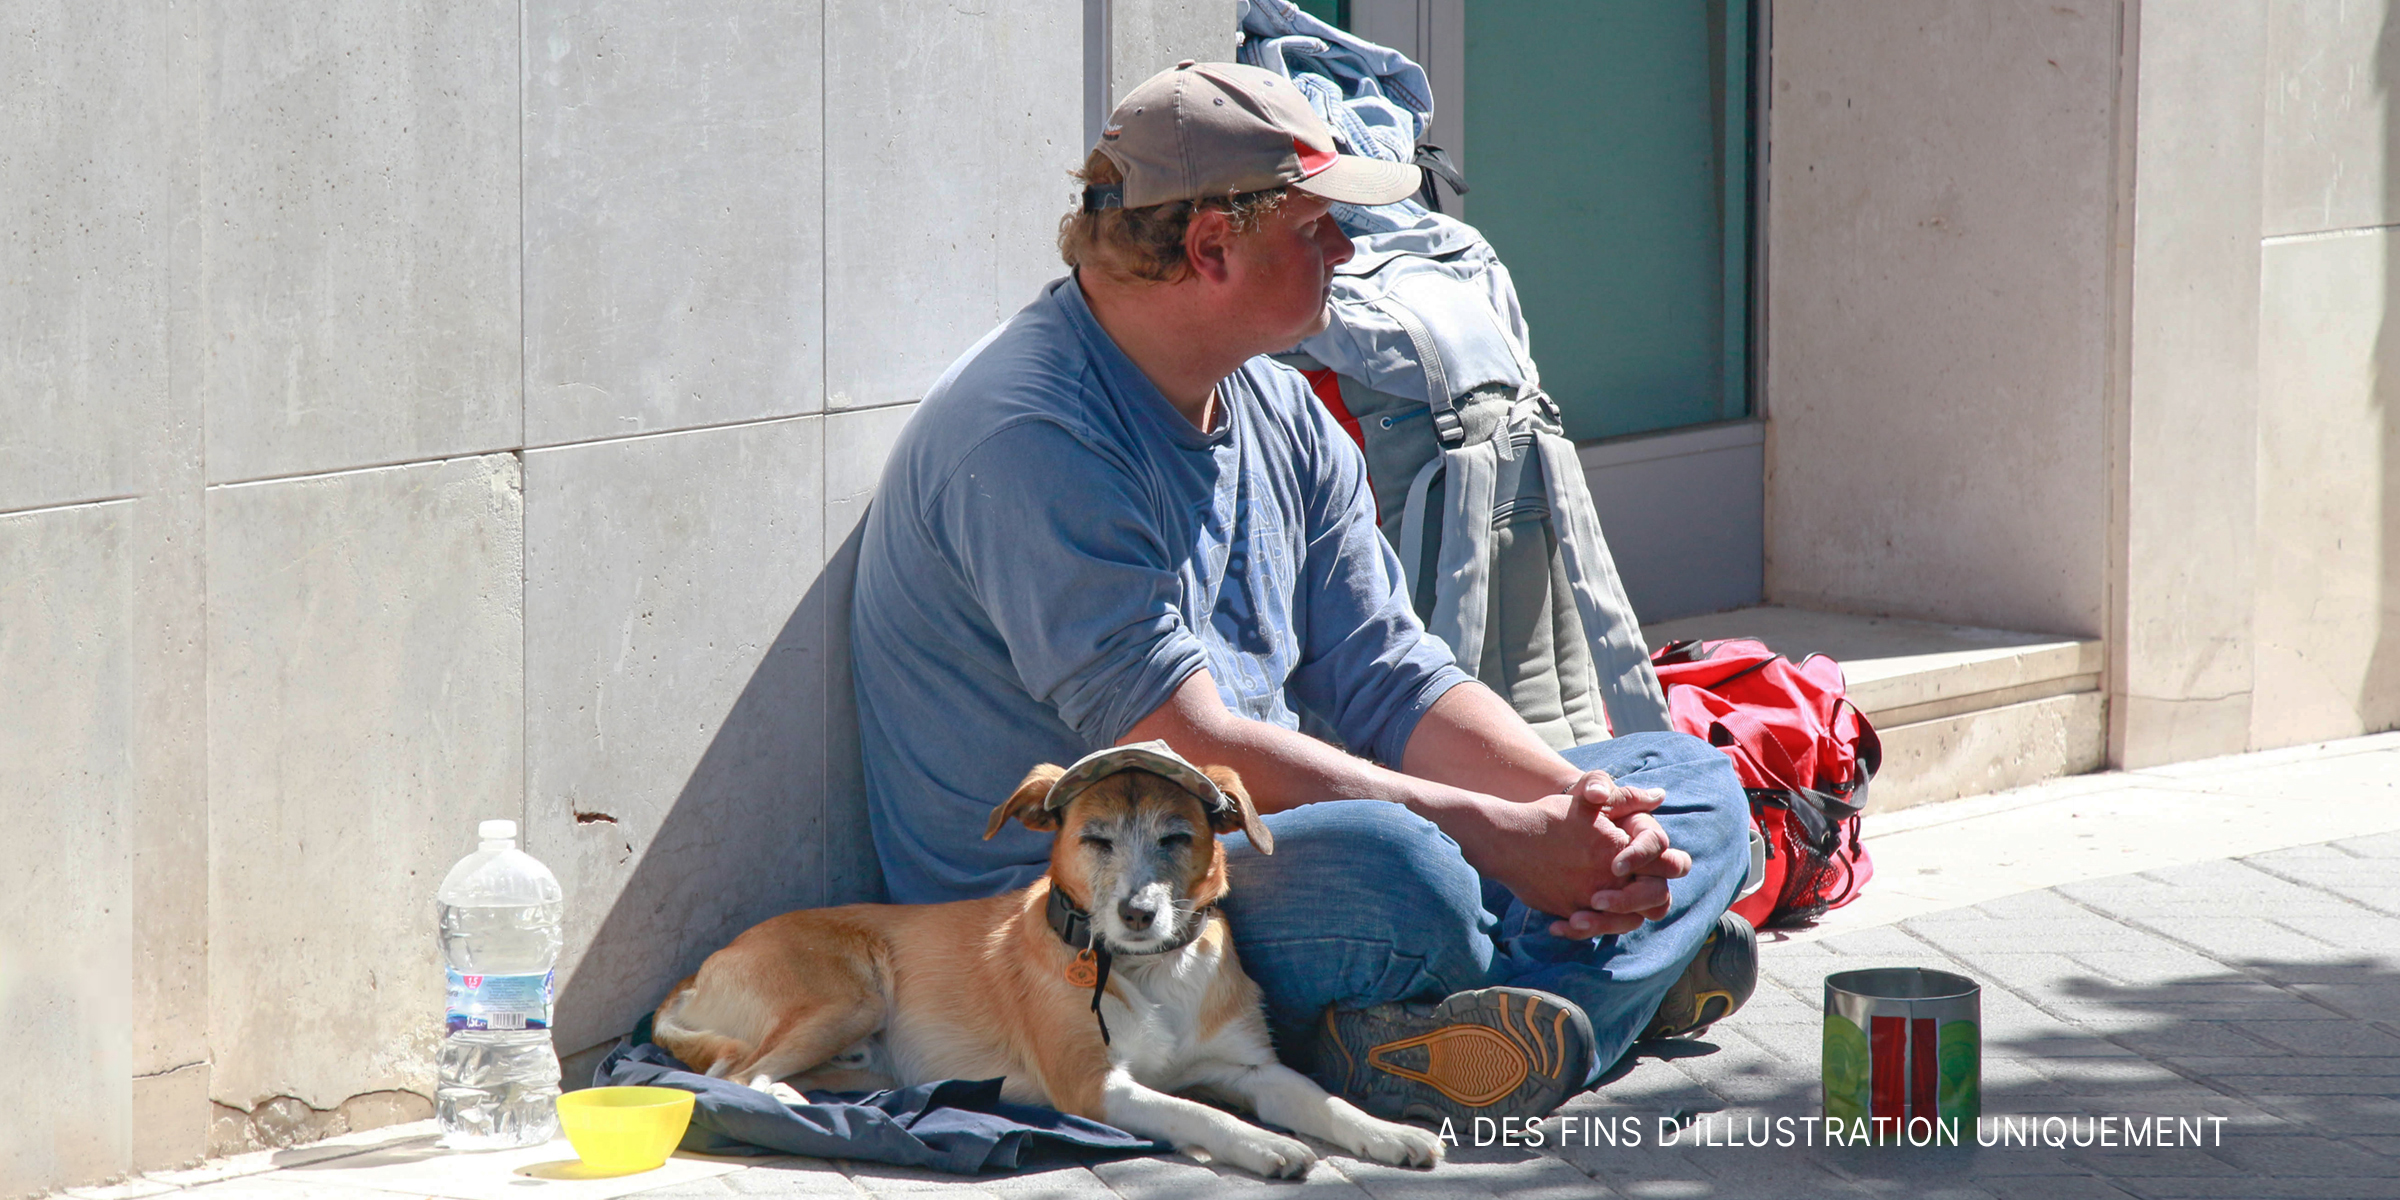 Un mendiant et un chien assis sur un trottoir. | Source : Flickr / Mussi Katz (Domaine public)